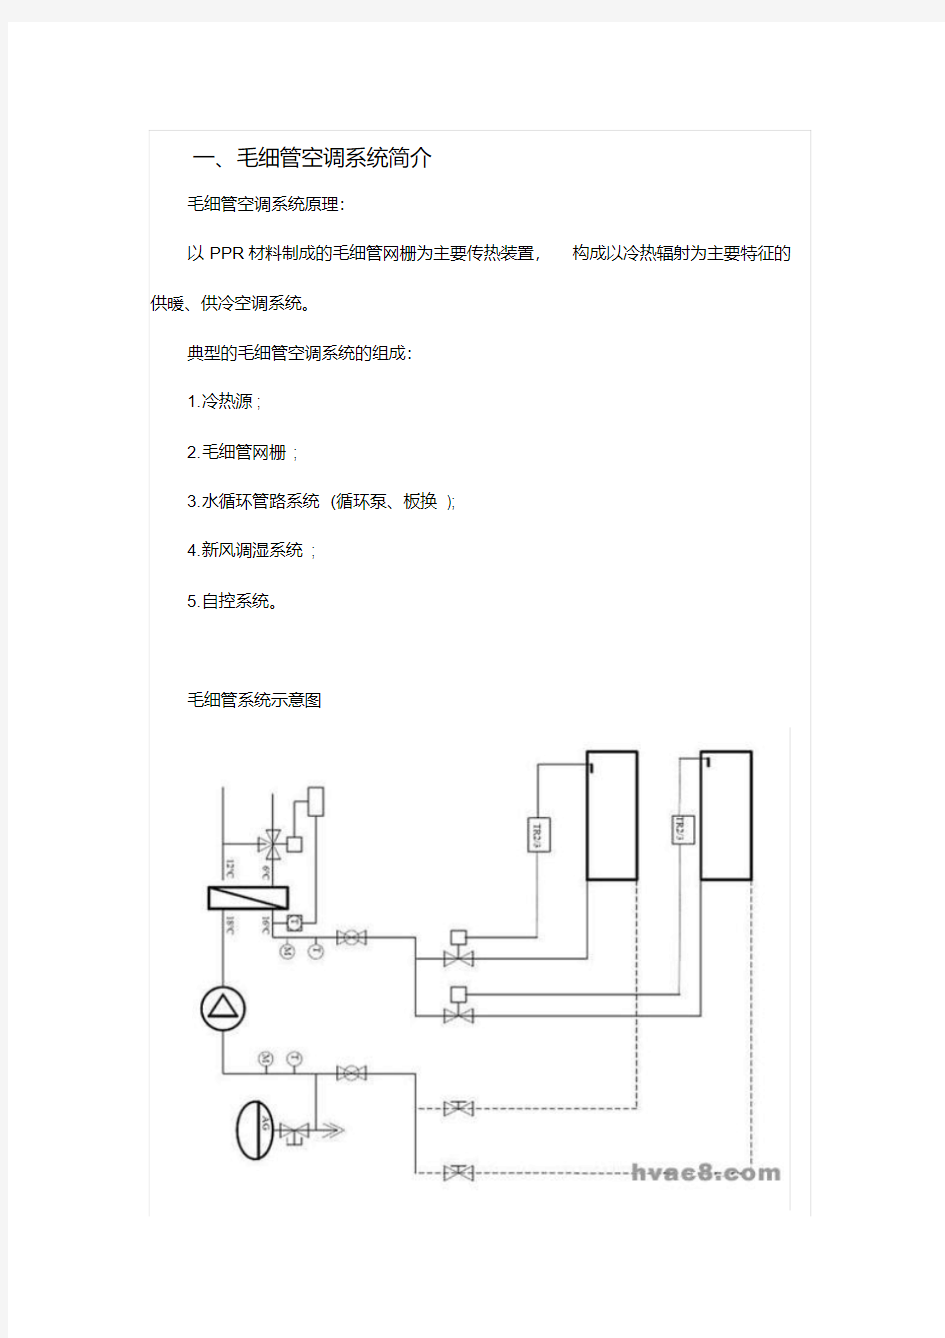 毛细管空调系统介绍及施工过程安装图解.pdf